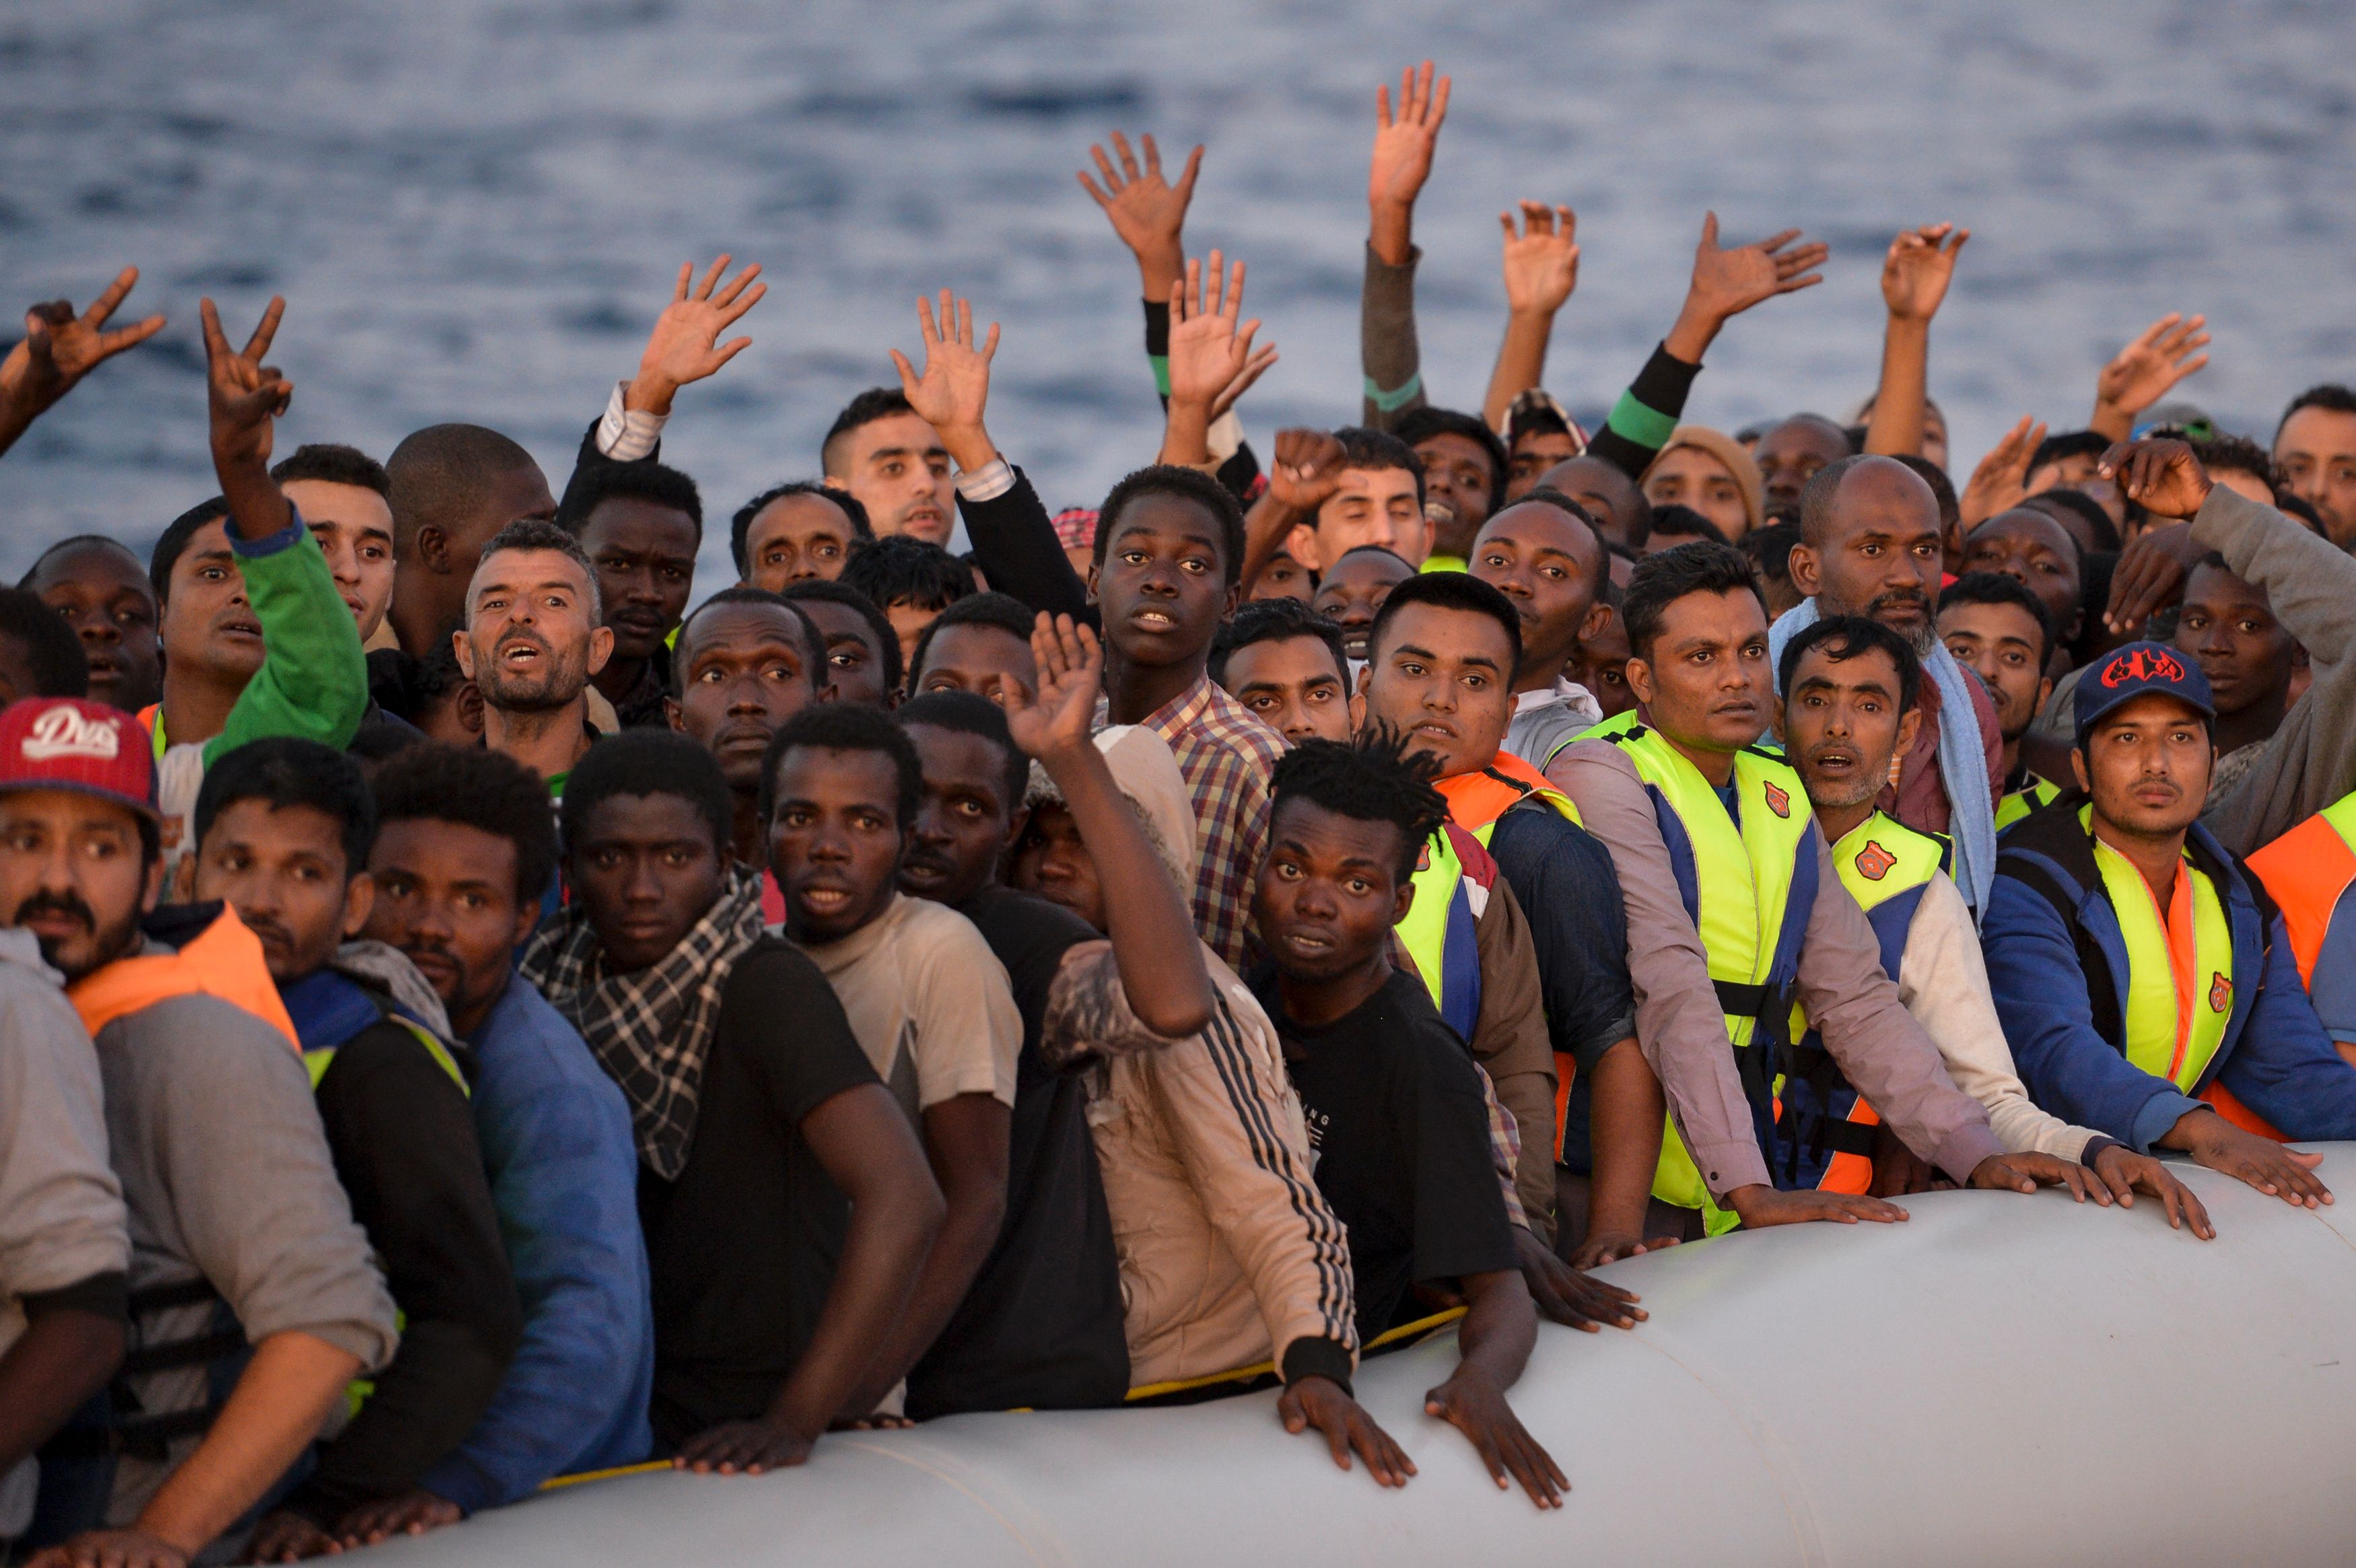 Italien fühlt sich in Flüchtlingskrise trotz Hilfszusagen allein gelassen – „Die ganze EU muss die Last tragen“